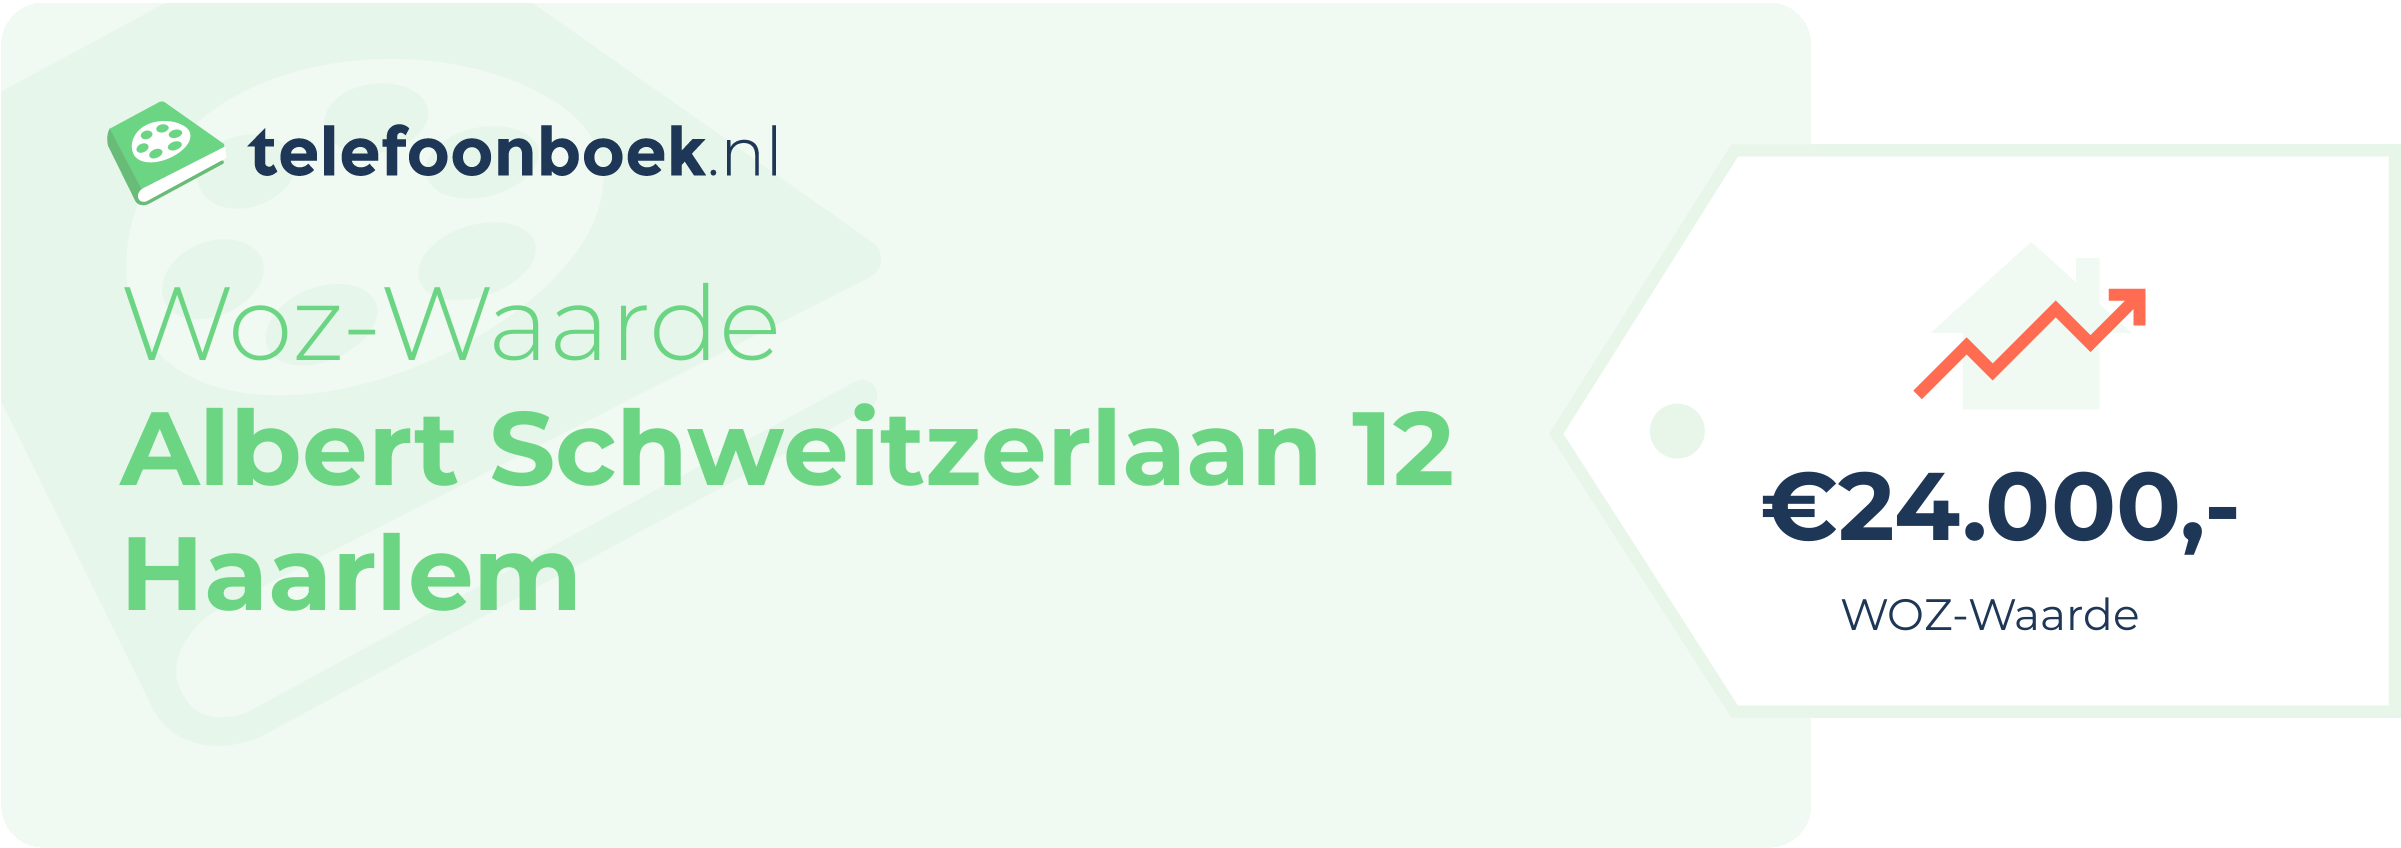 WOZ-waarde Albert Schweitzerlaan 12 Haarlem